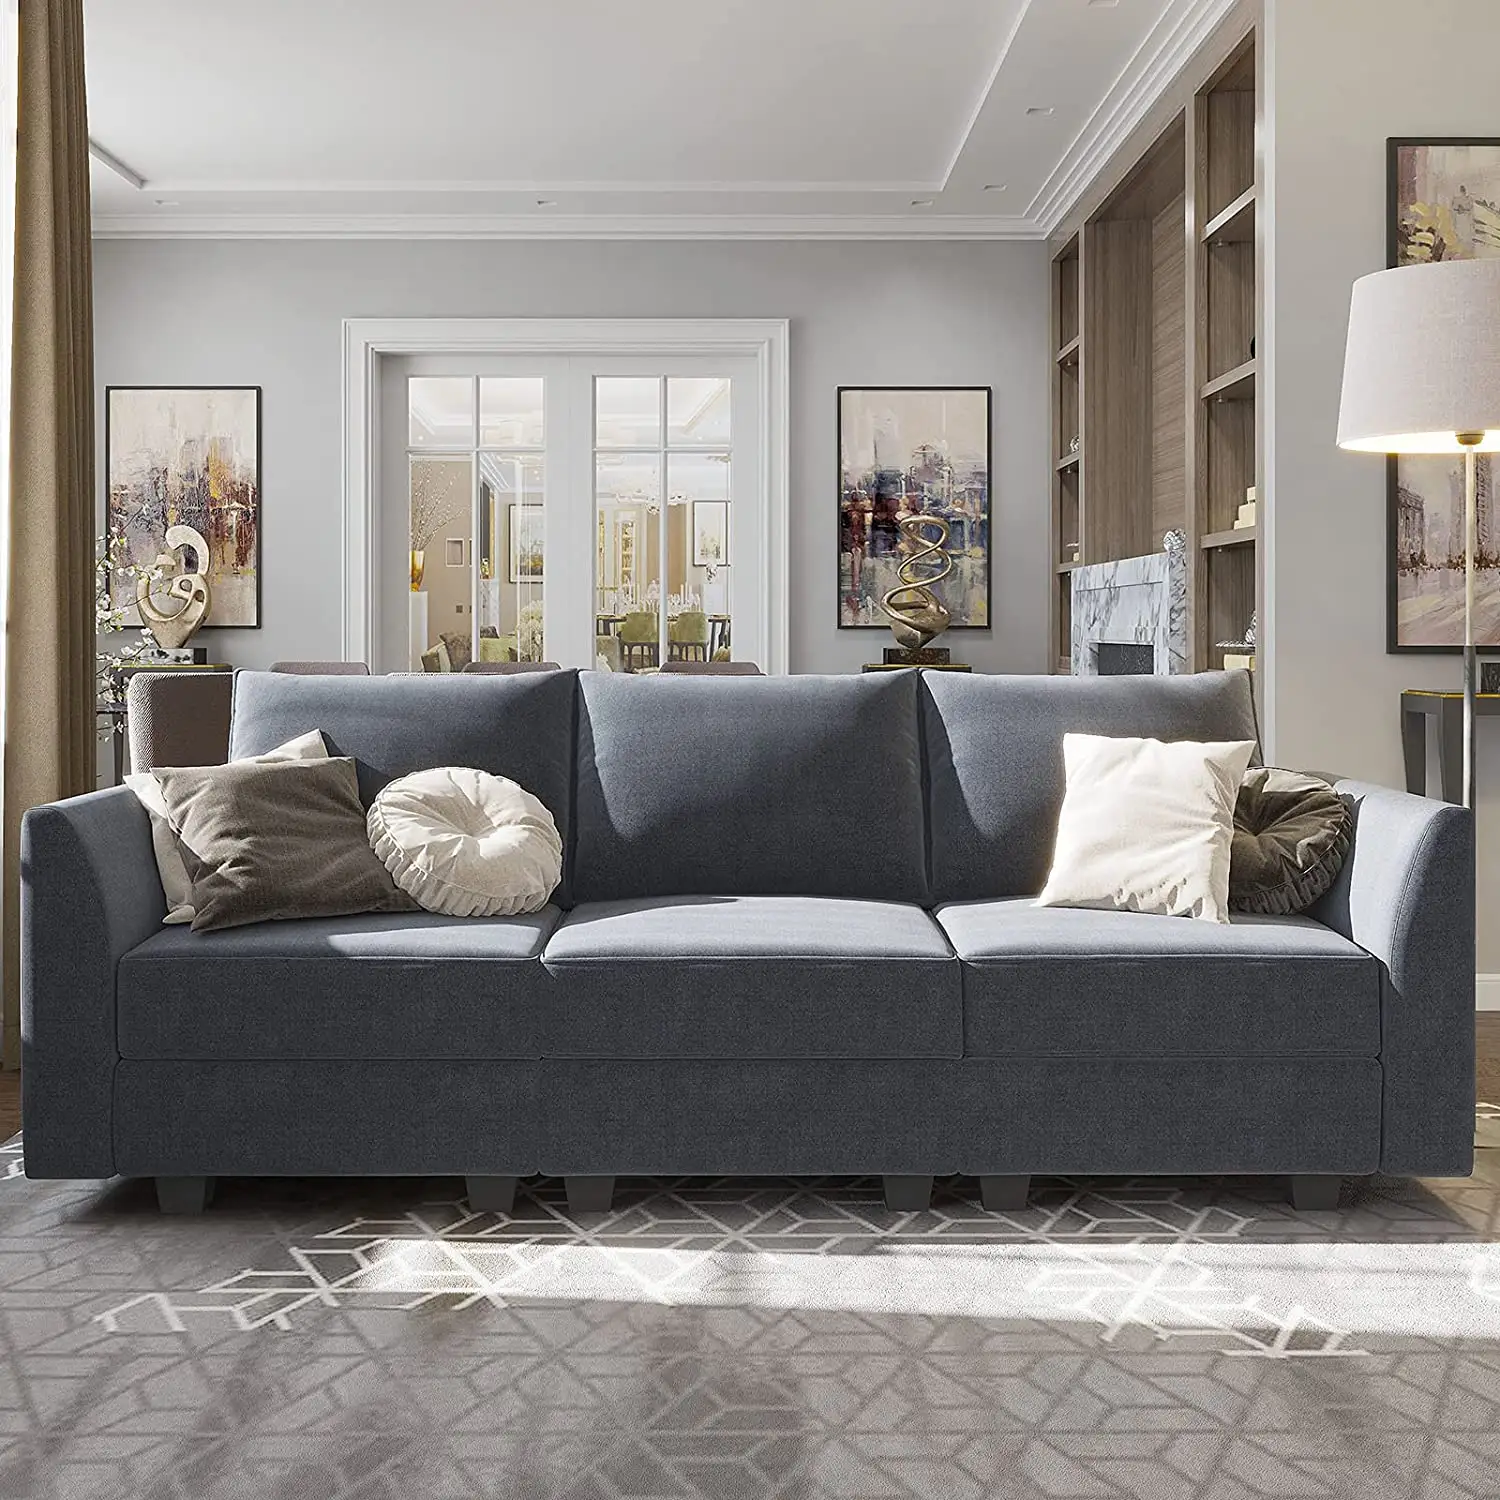 Mobili per la casa moderni grigio bluastro soggiorno divano modulare in legno divano imbottito in tessuto di poliestere per piccolo appartamento